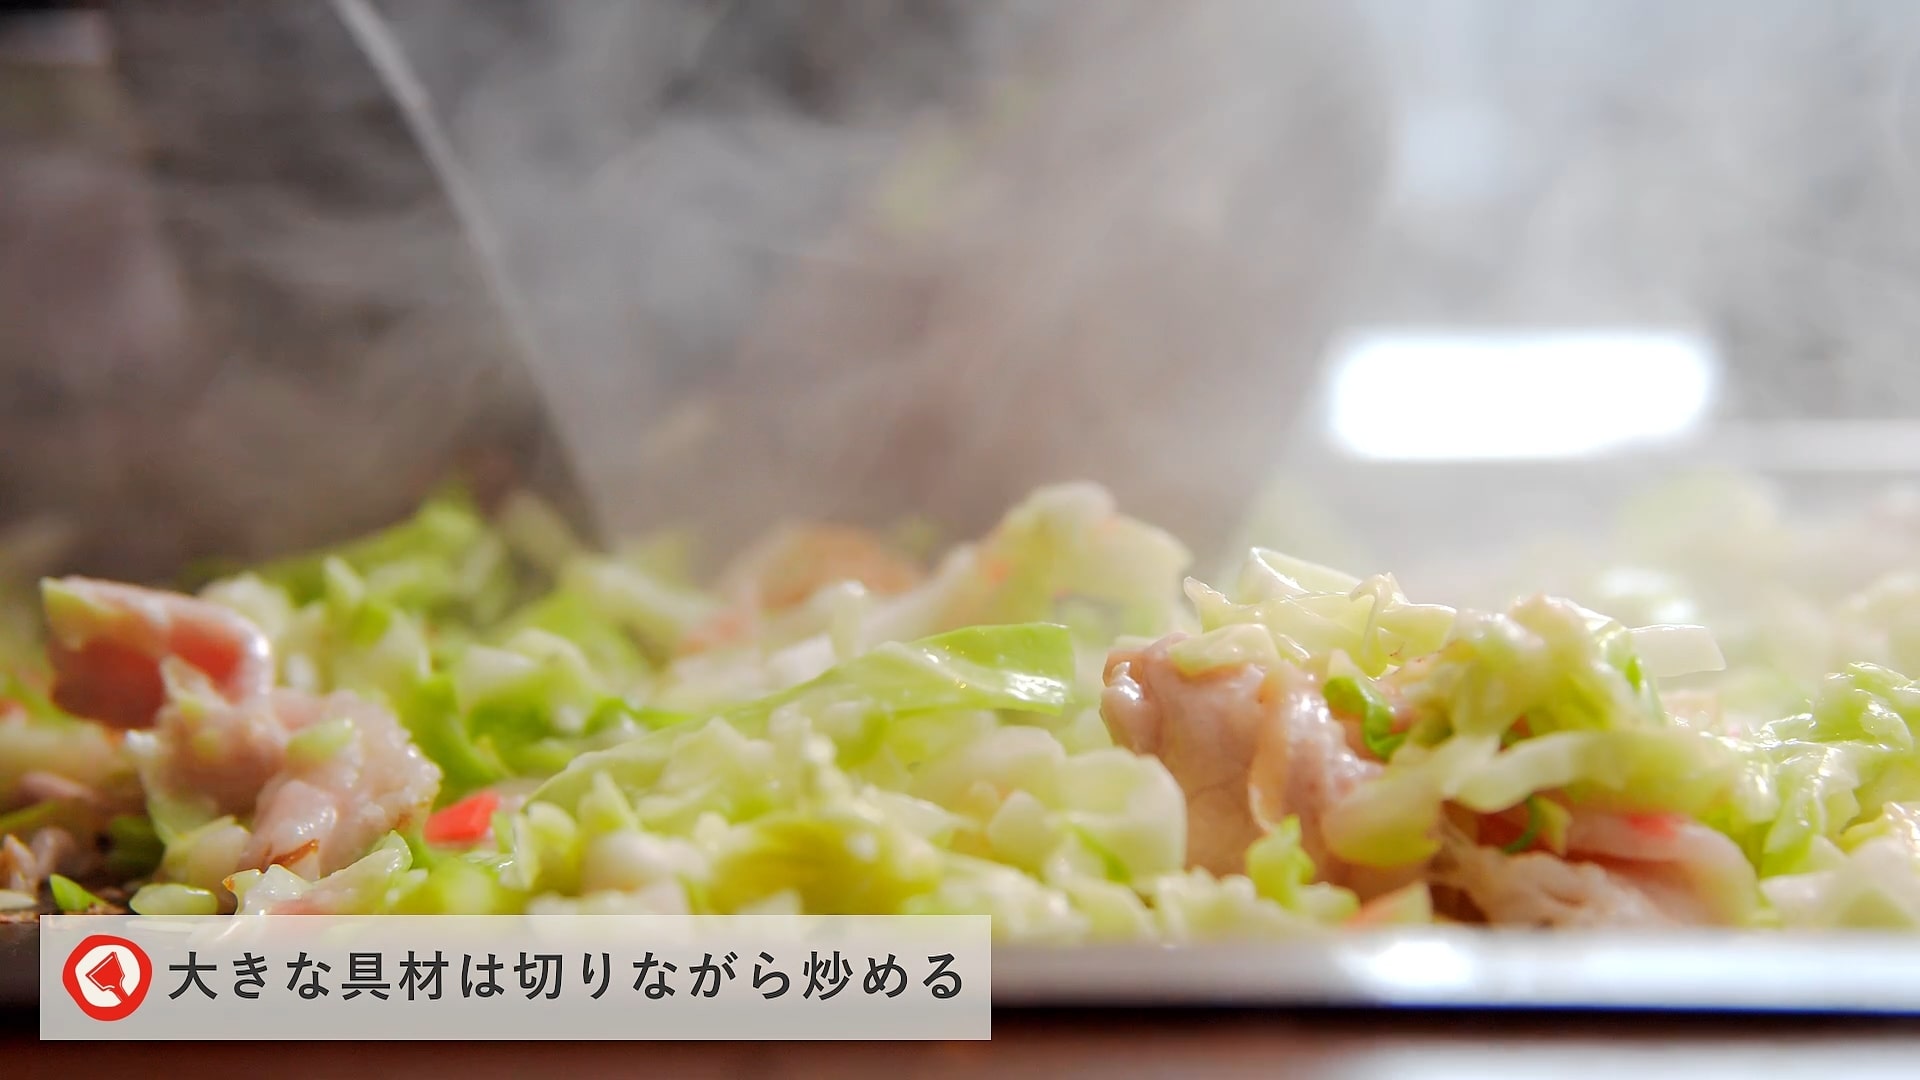 Fugetsu recipe movie